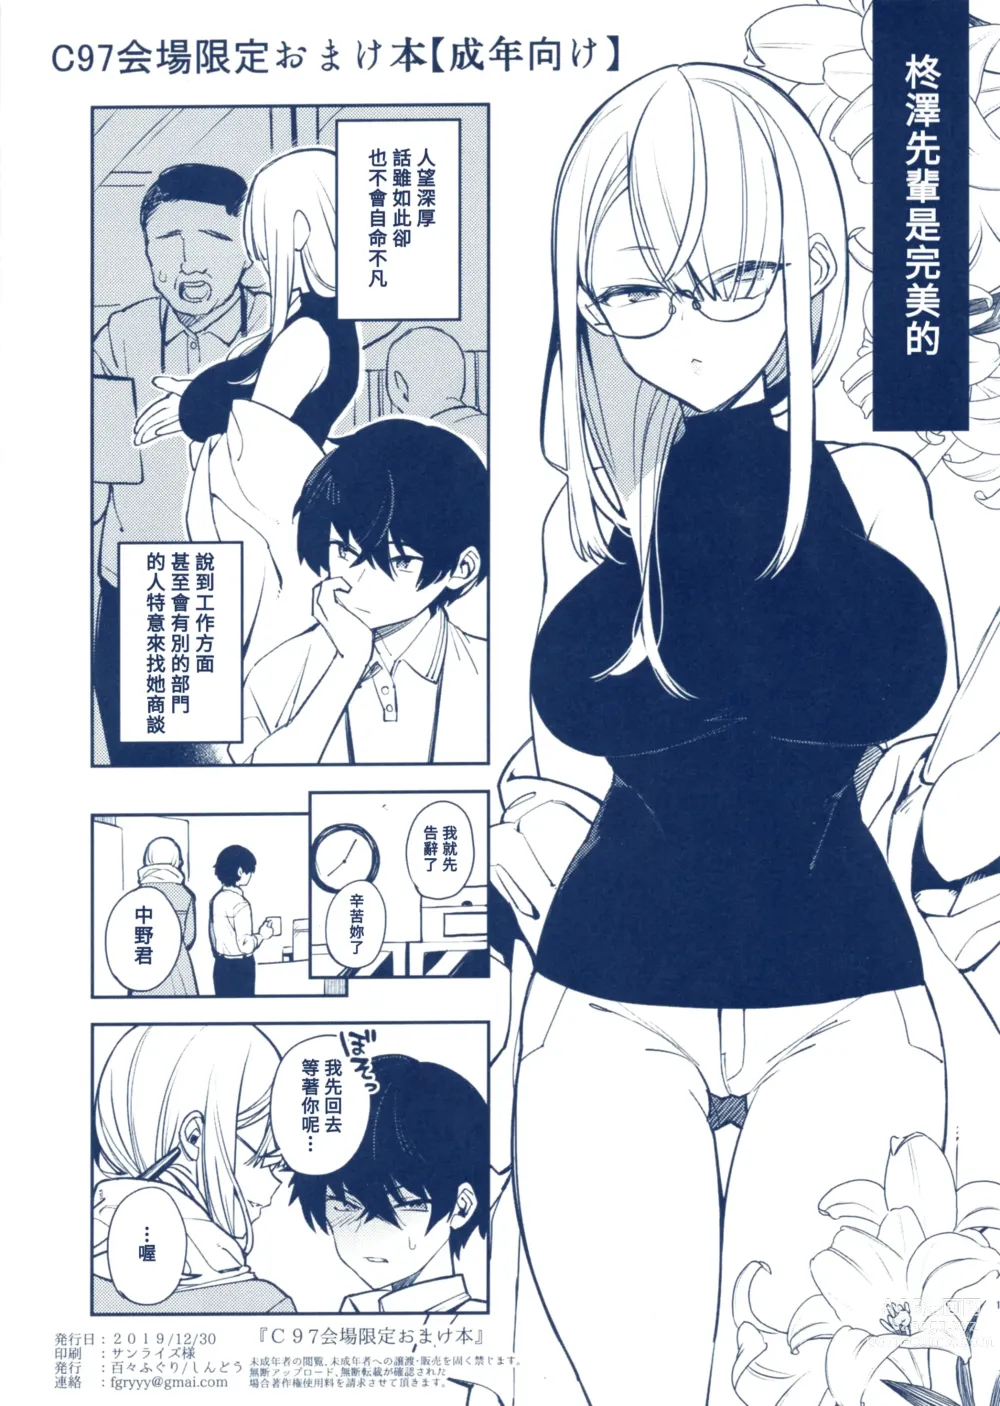 Page 1 of doujinshi C97 Kaijou Gentei Omakebon